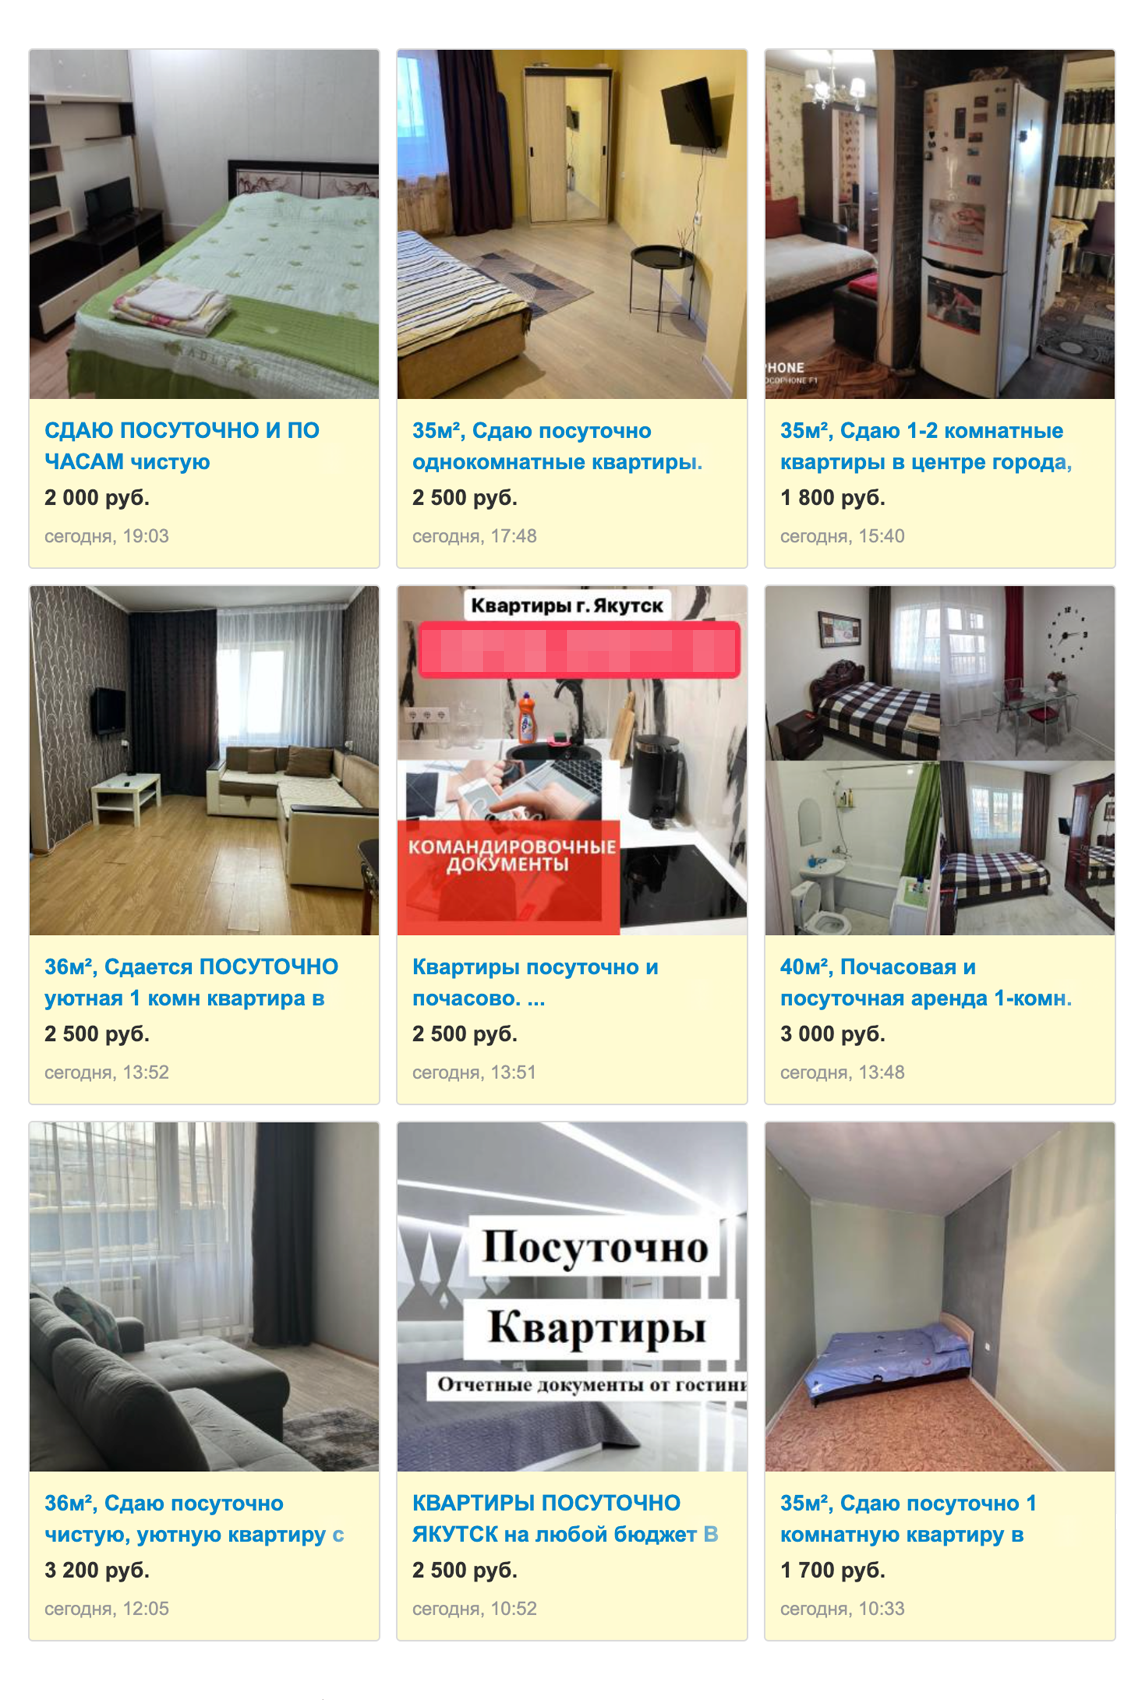 Объявлений о посуточной аренде гораздо больше. Средняя цена за квартиру — 3000 ₽ в сутки. Источник: doska.ykt.ru